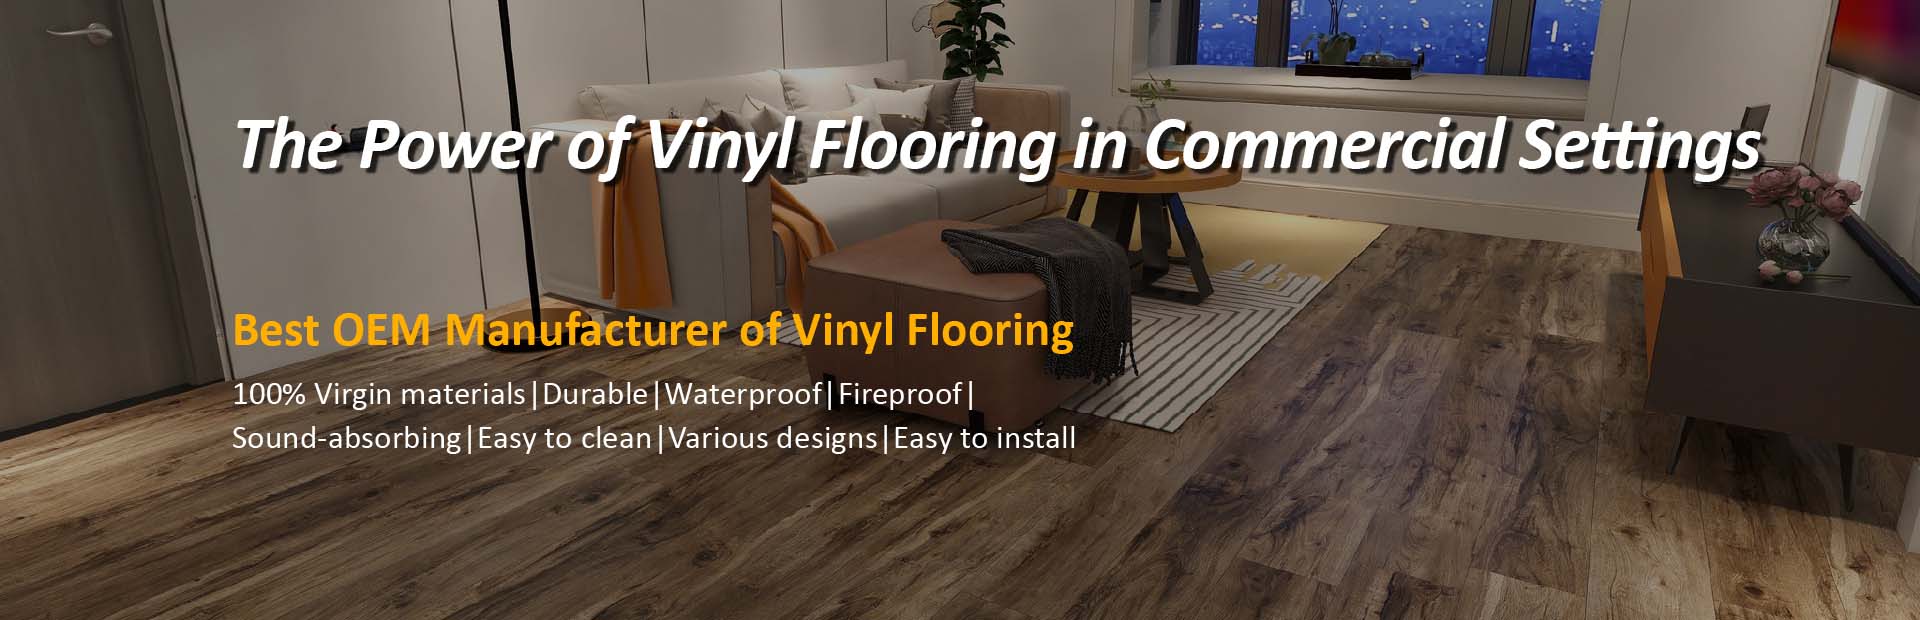 OEM Manufacturer ng Vinyl Flooring